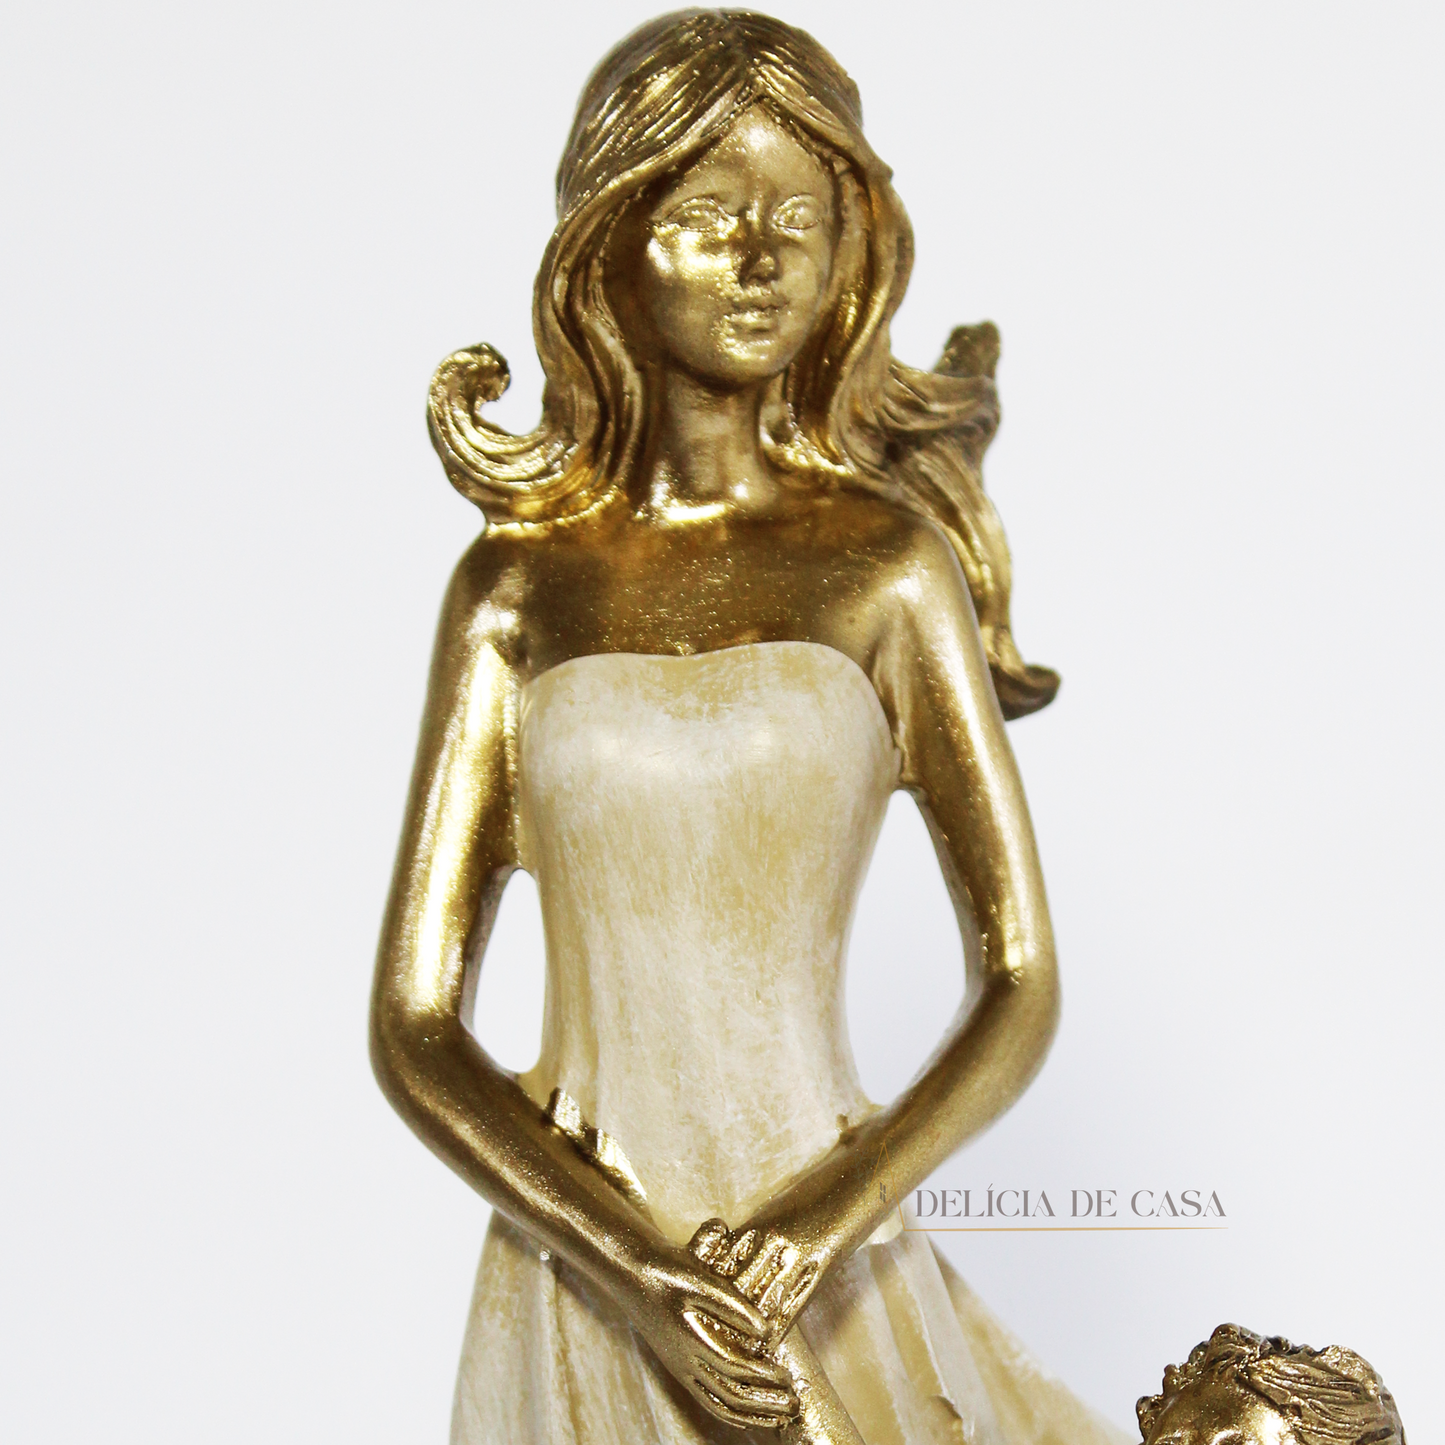 Estátua Decorativa Mãe e Filho em Resina